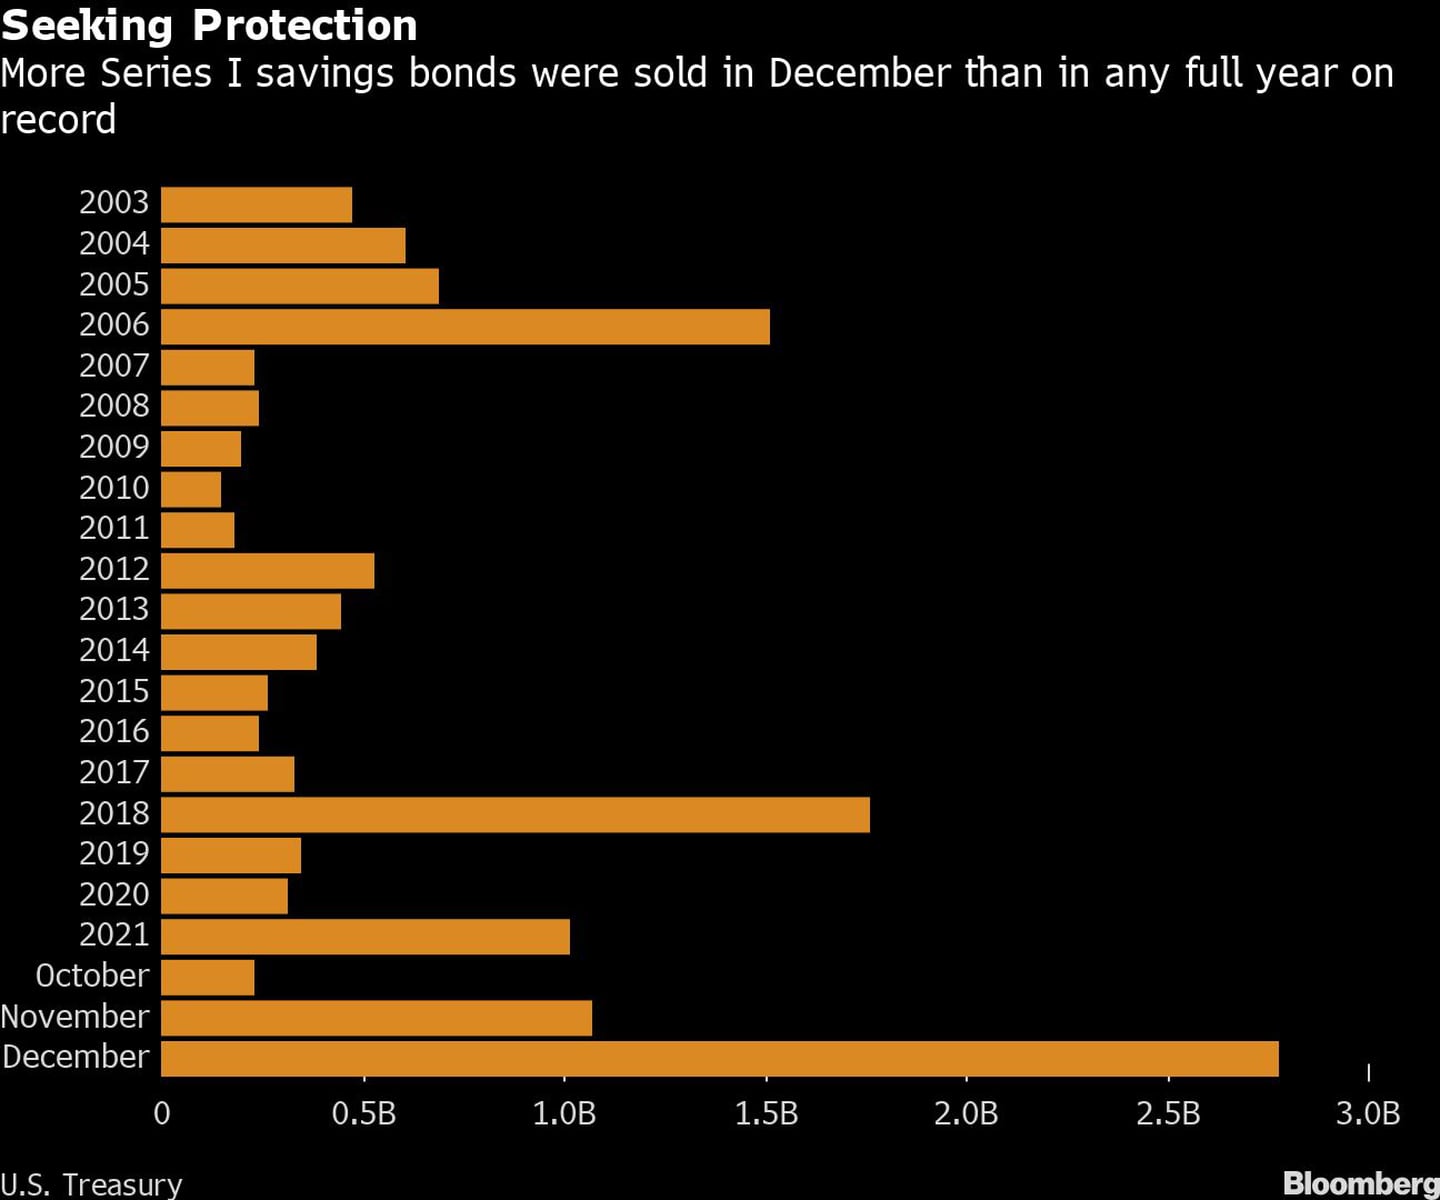 En busca de protección
En diciembre se vendieron más bonos de ahorro de la serie I que en cualquier año completo registrado